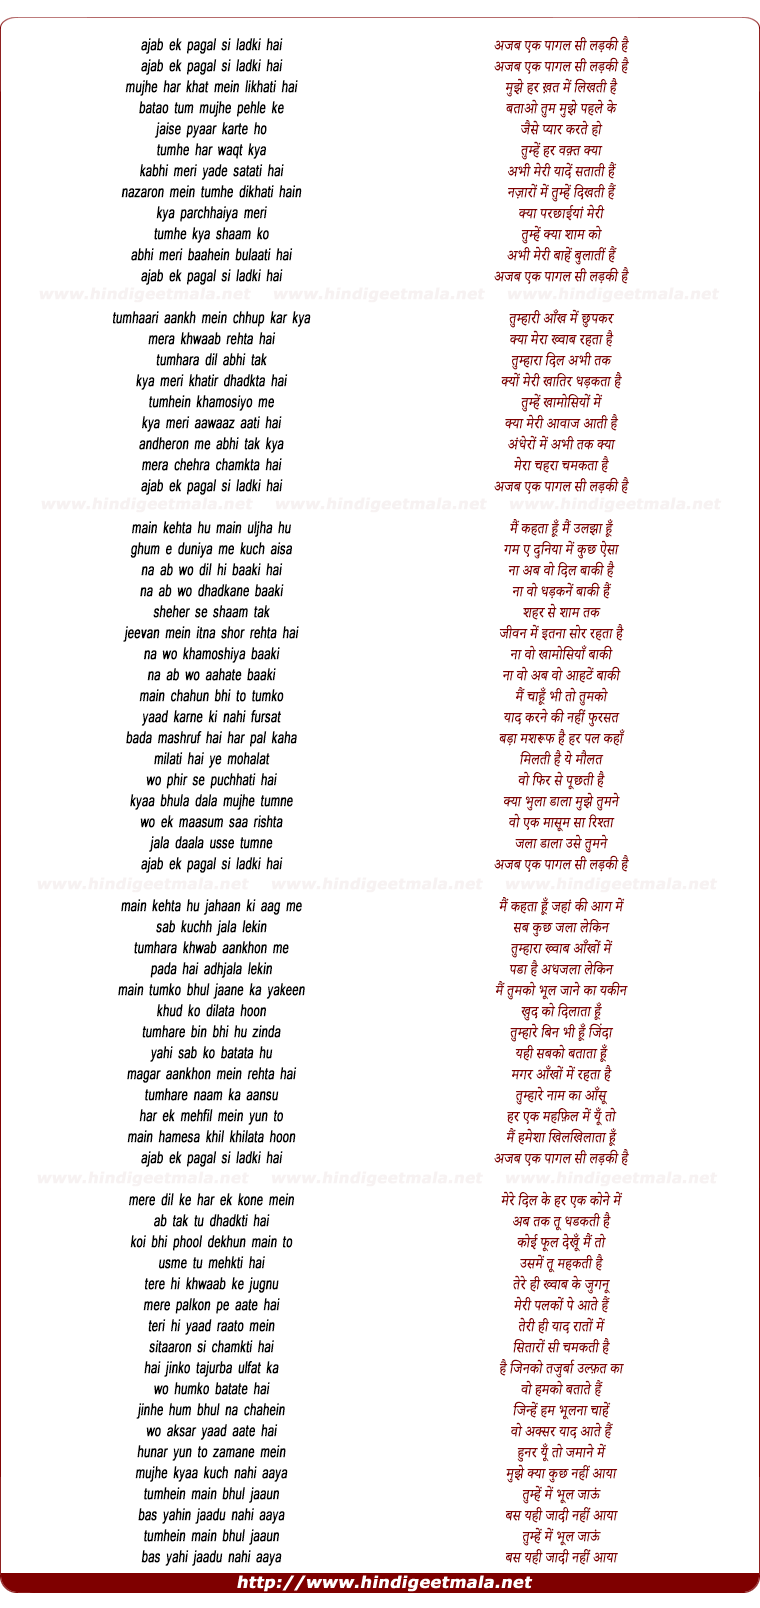 lyrics of song Ajab Ek Pagal Si Ladki Hai